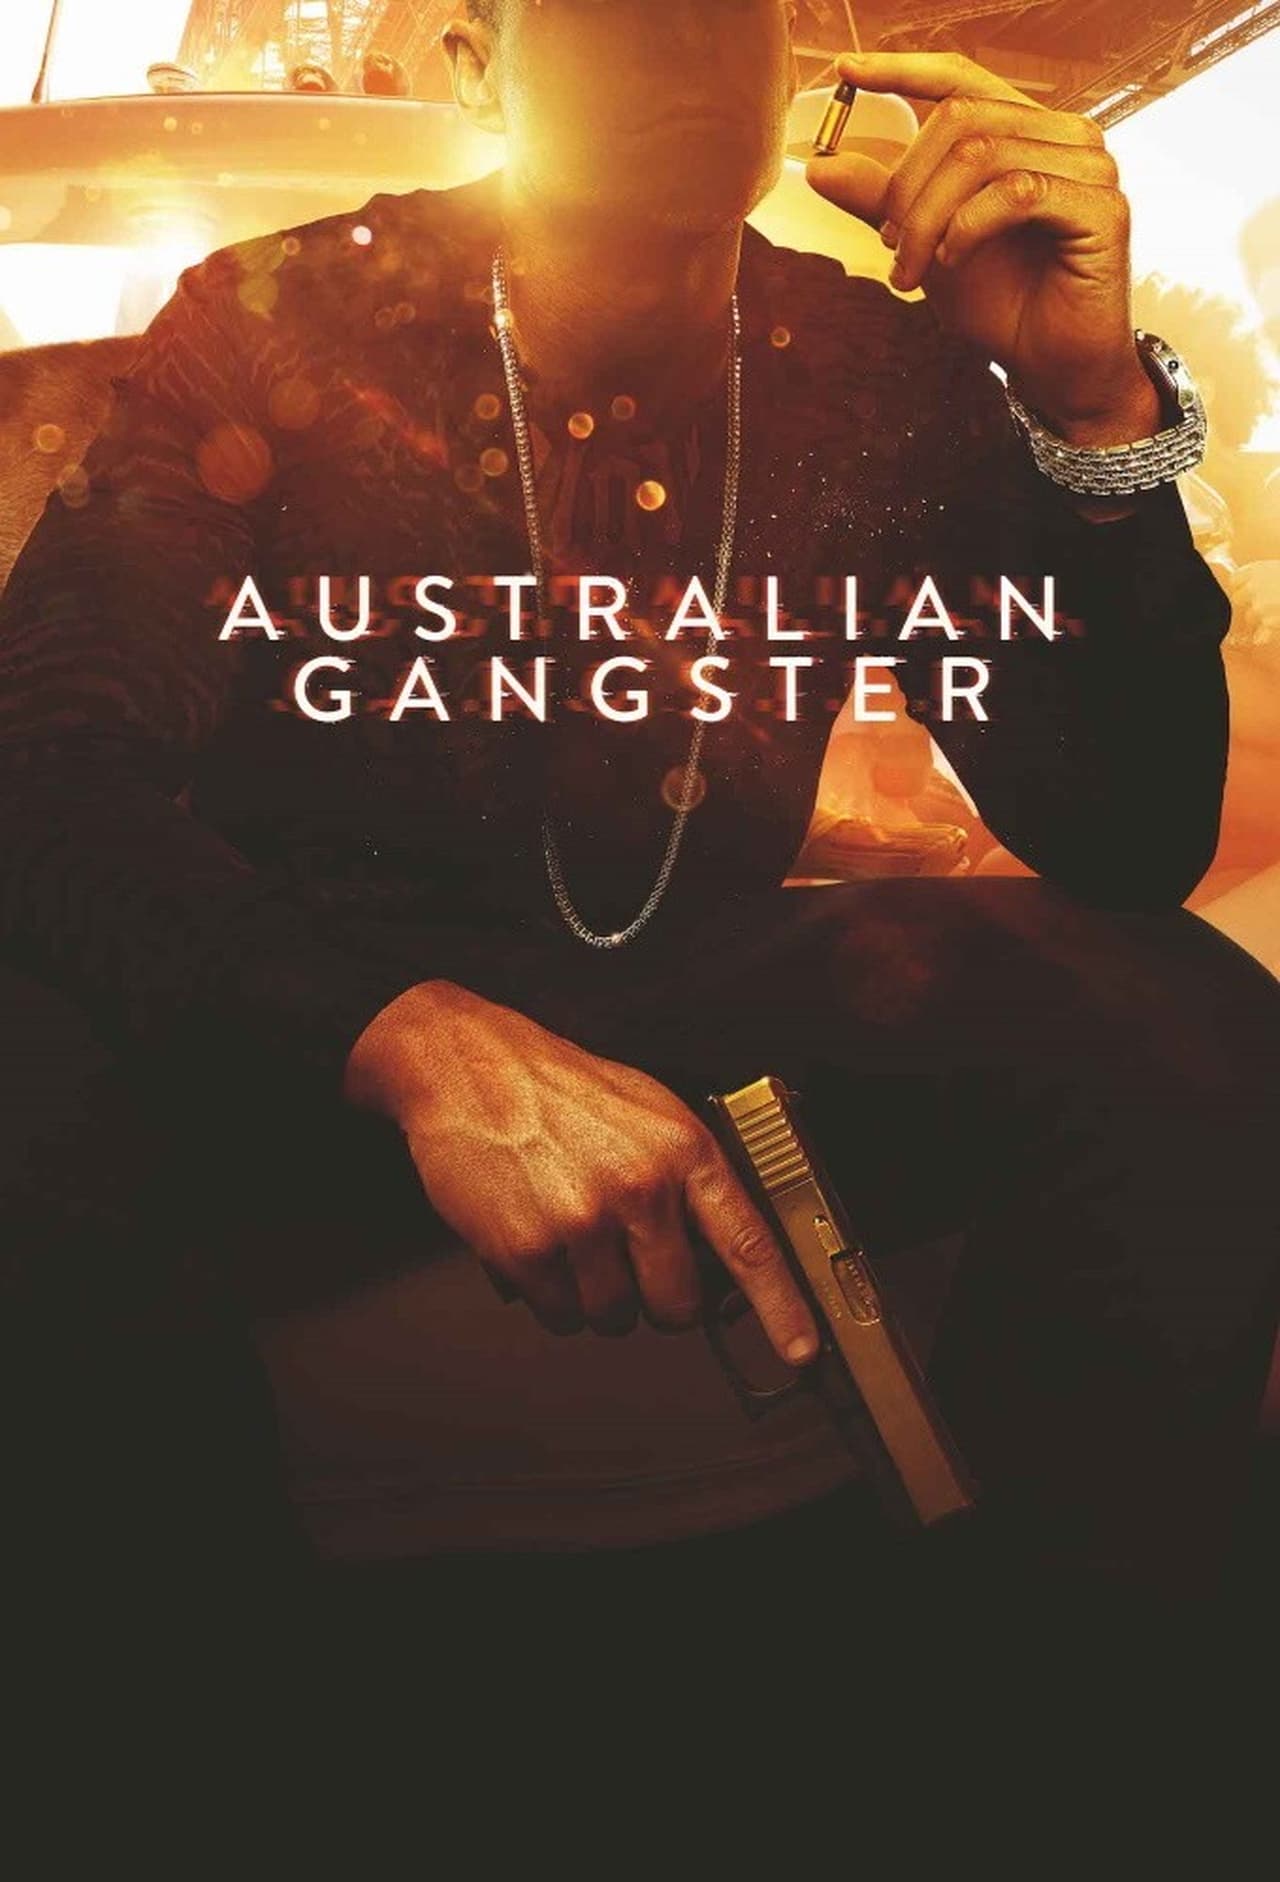 Plakát pro film “Australský gangster”